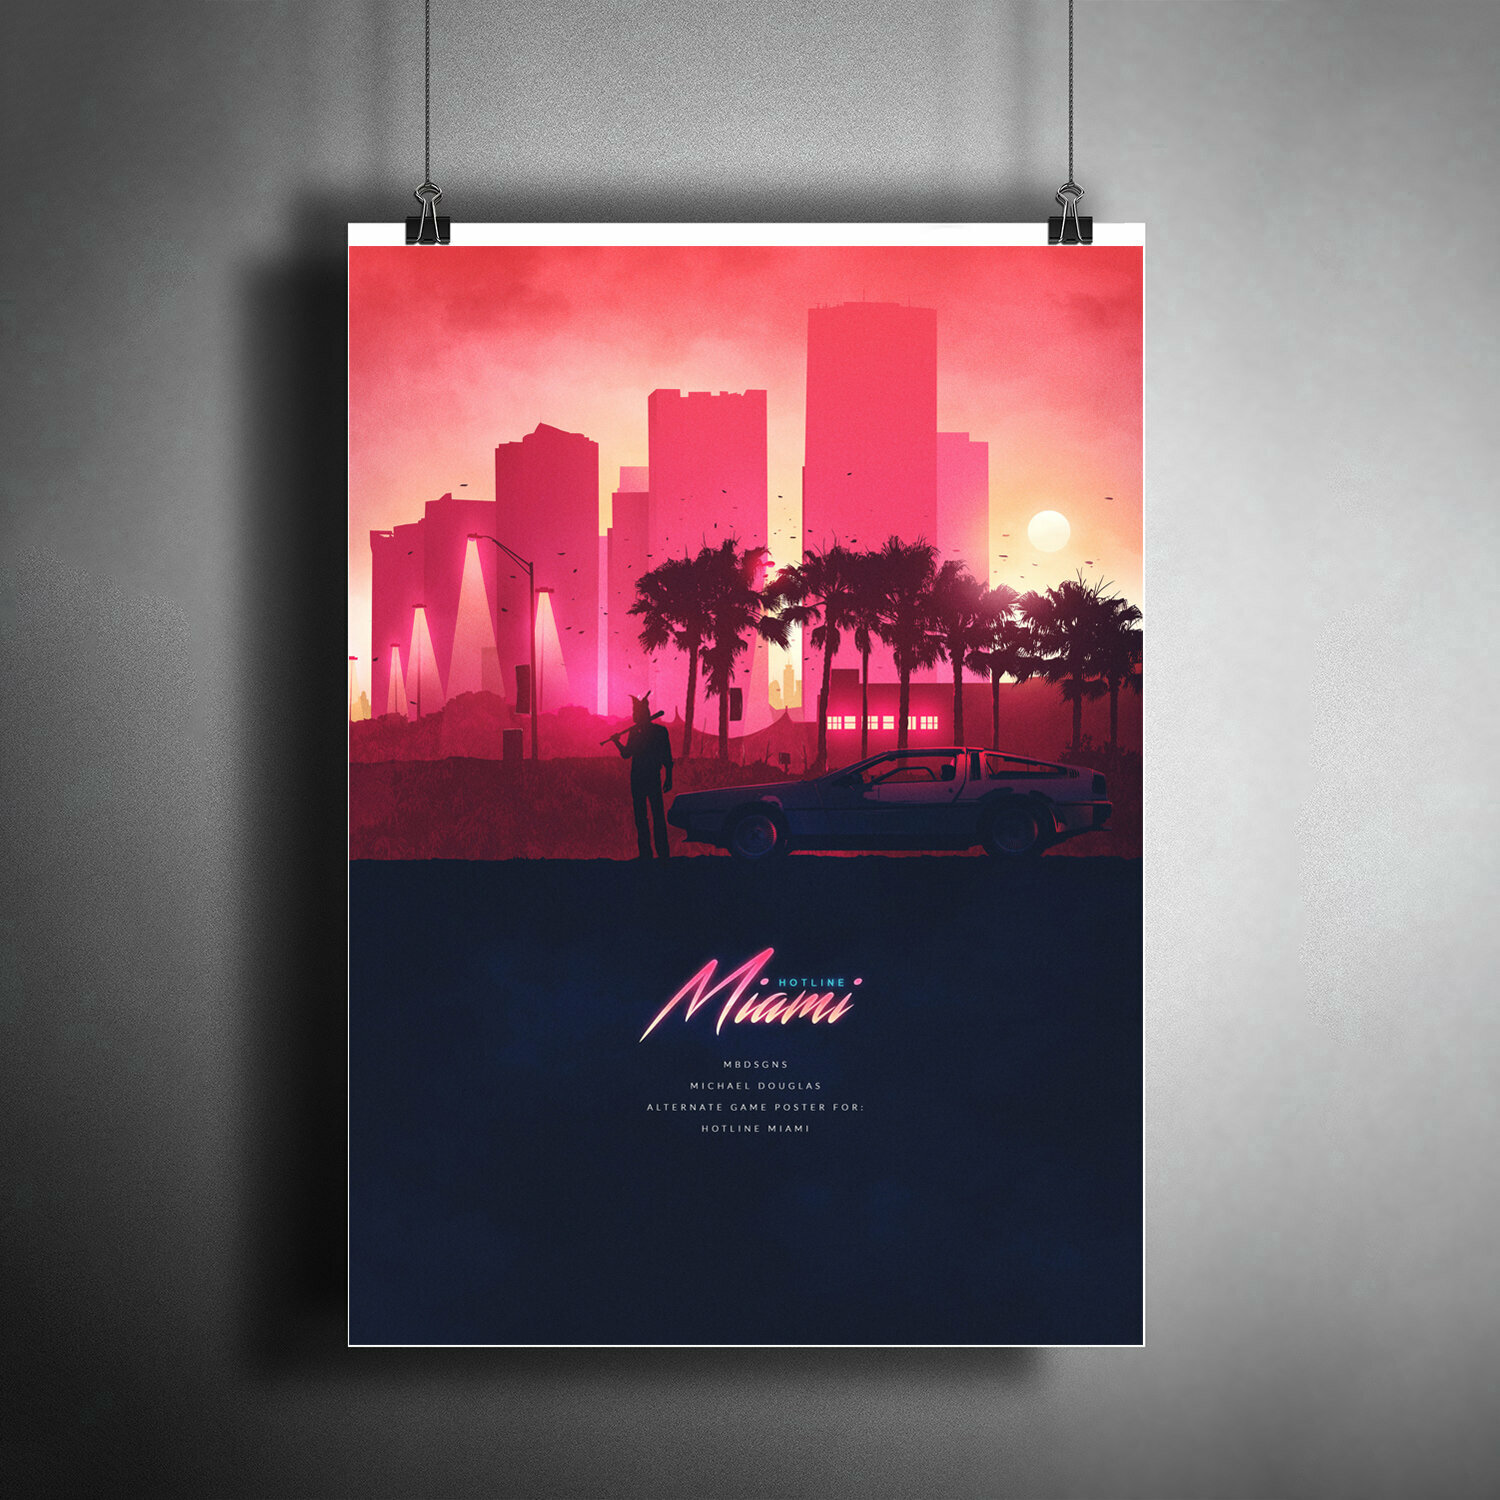 Постер плакат для интерьера "Компьютерная игра: Hotline Miami. Игра Хотлайн Маями" / Декор дома офиса комнаты квартиры A3 (297 x 420 мм)